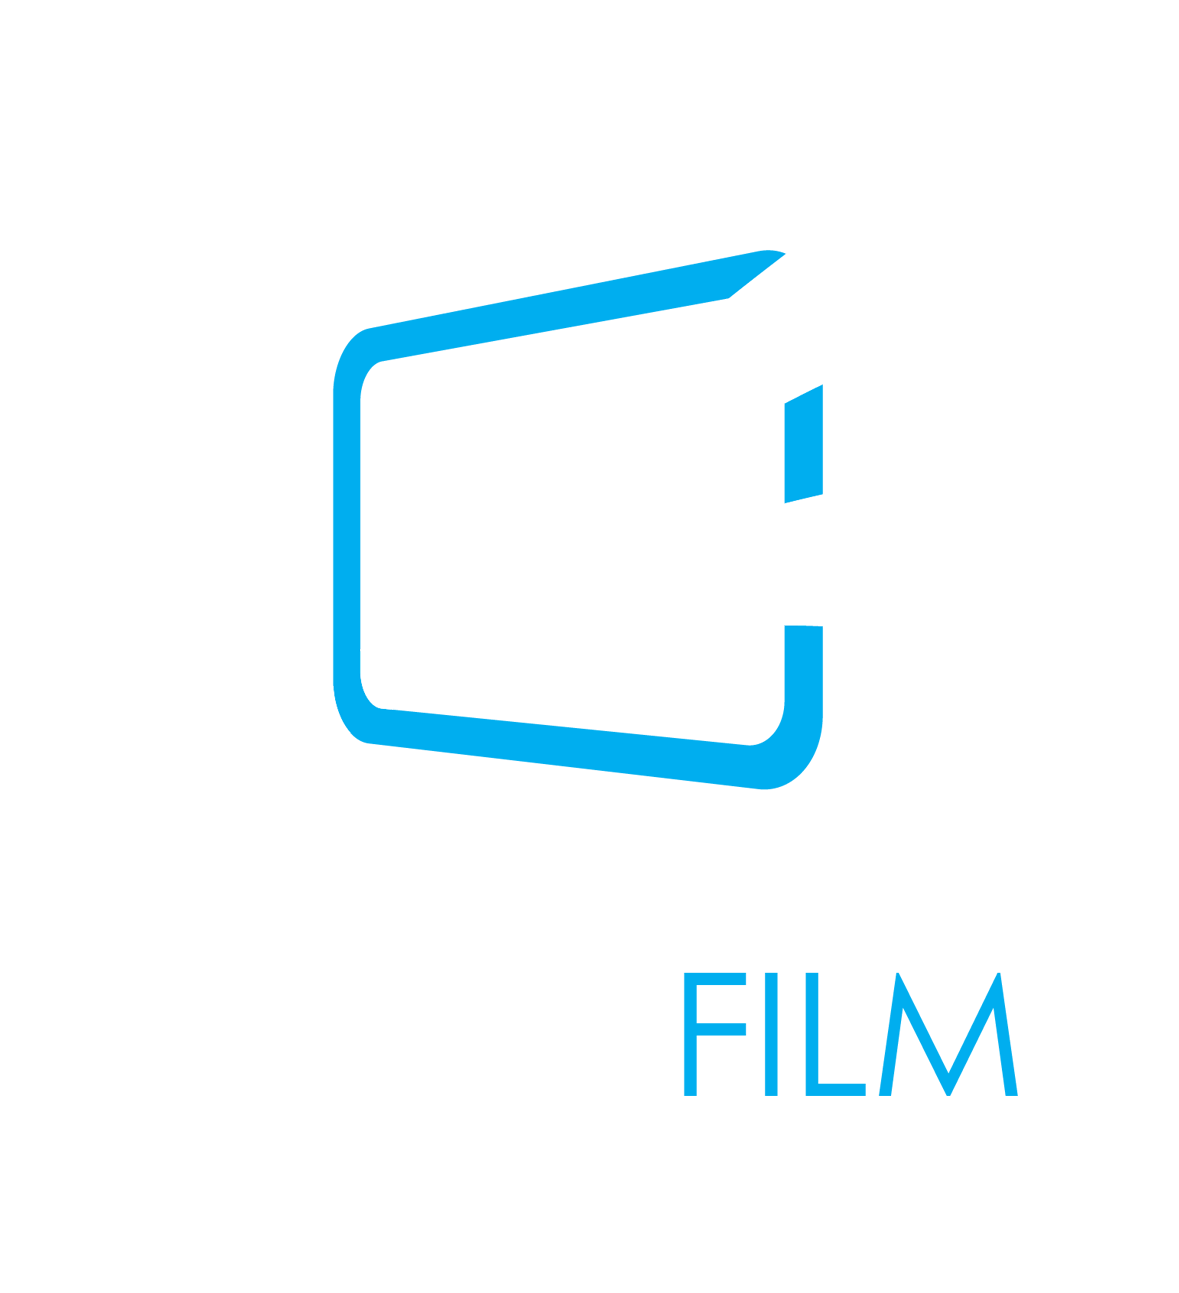 Oumafilm